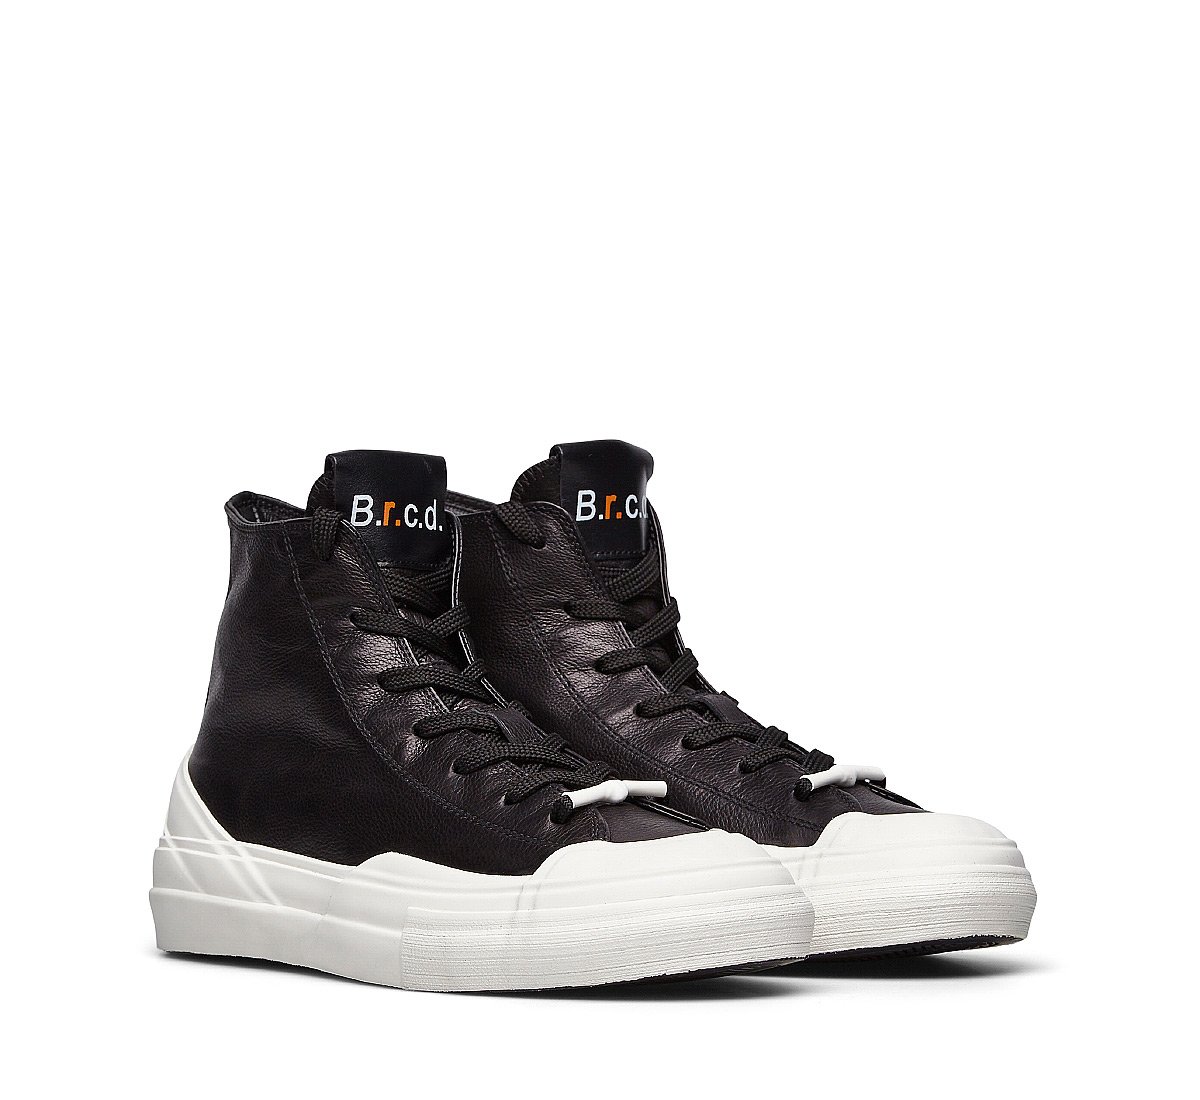 Sneaker Linea B.r.c.d.